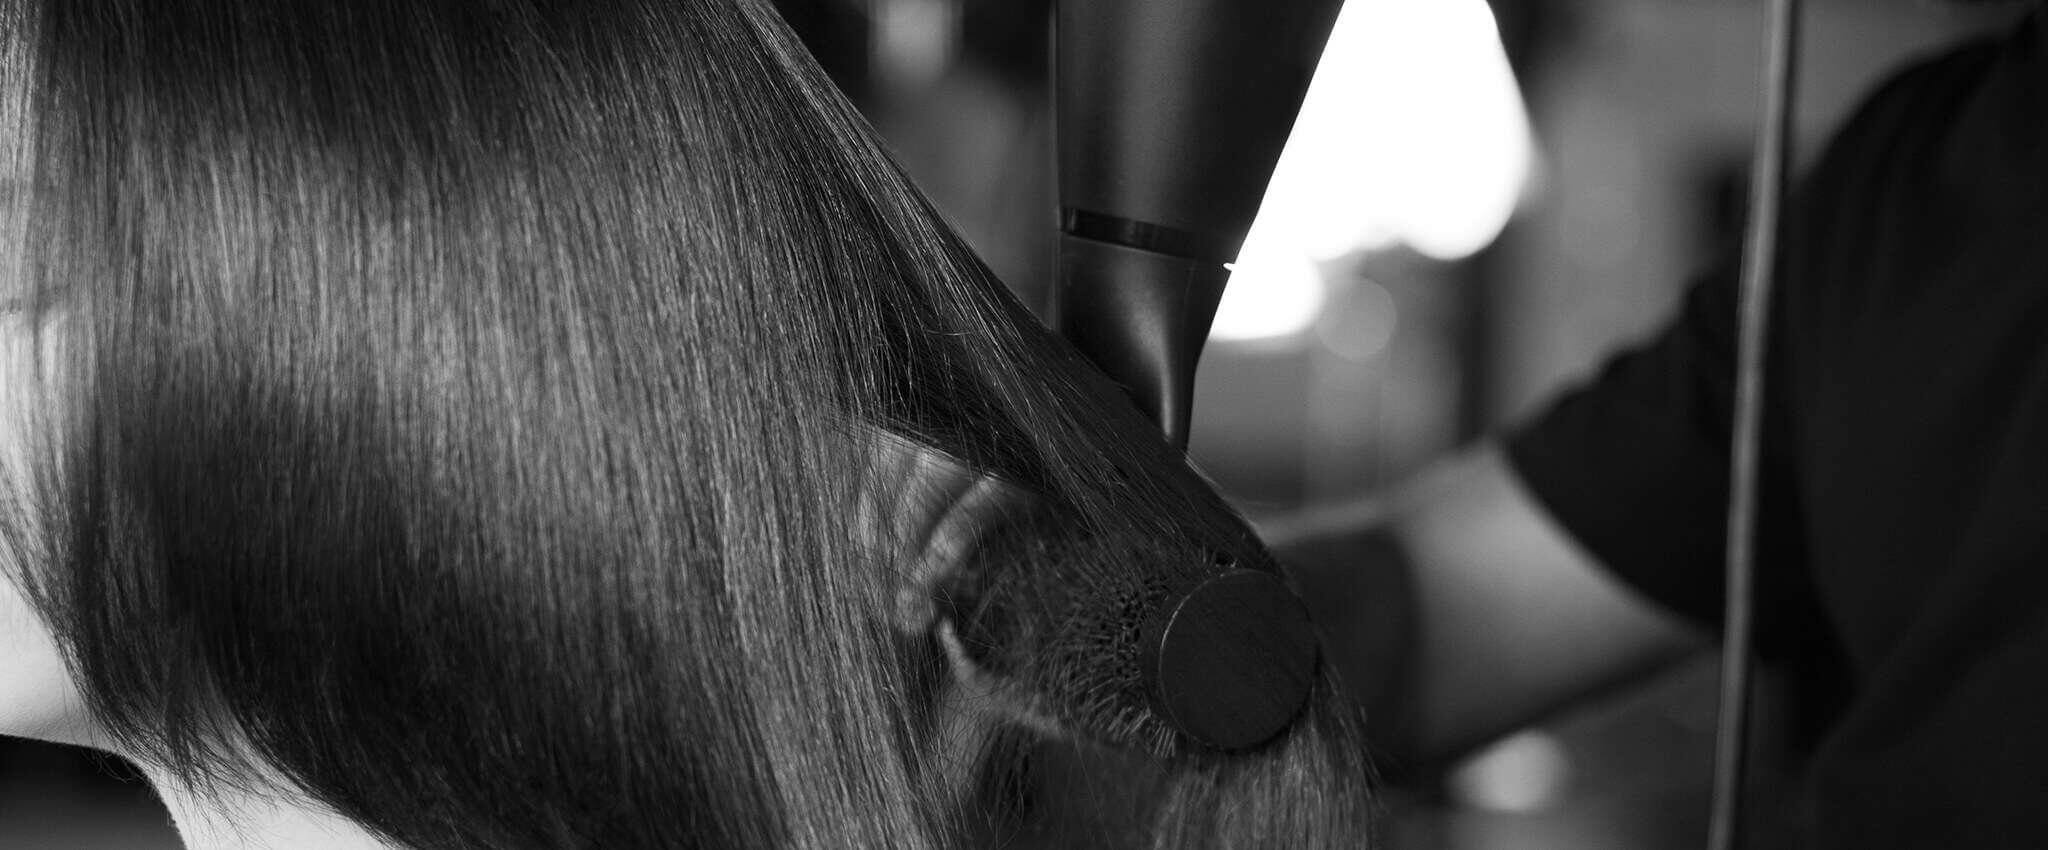 Primer plano del cabello fino de una modelo peinado con cepillo y secador.